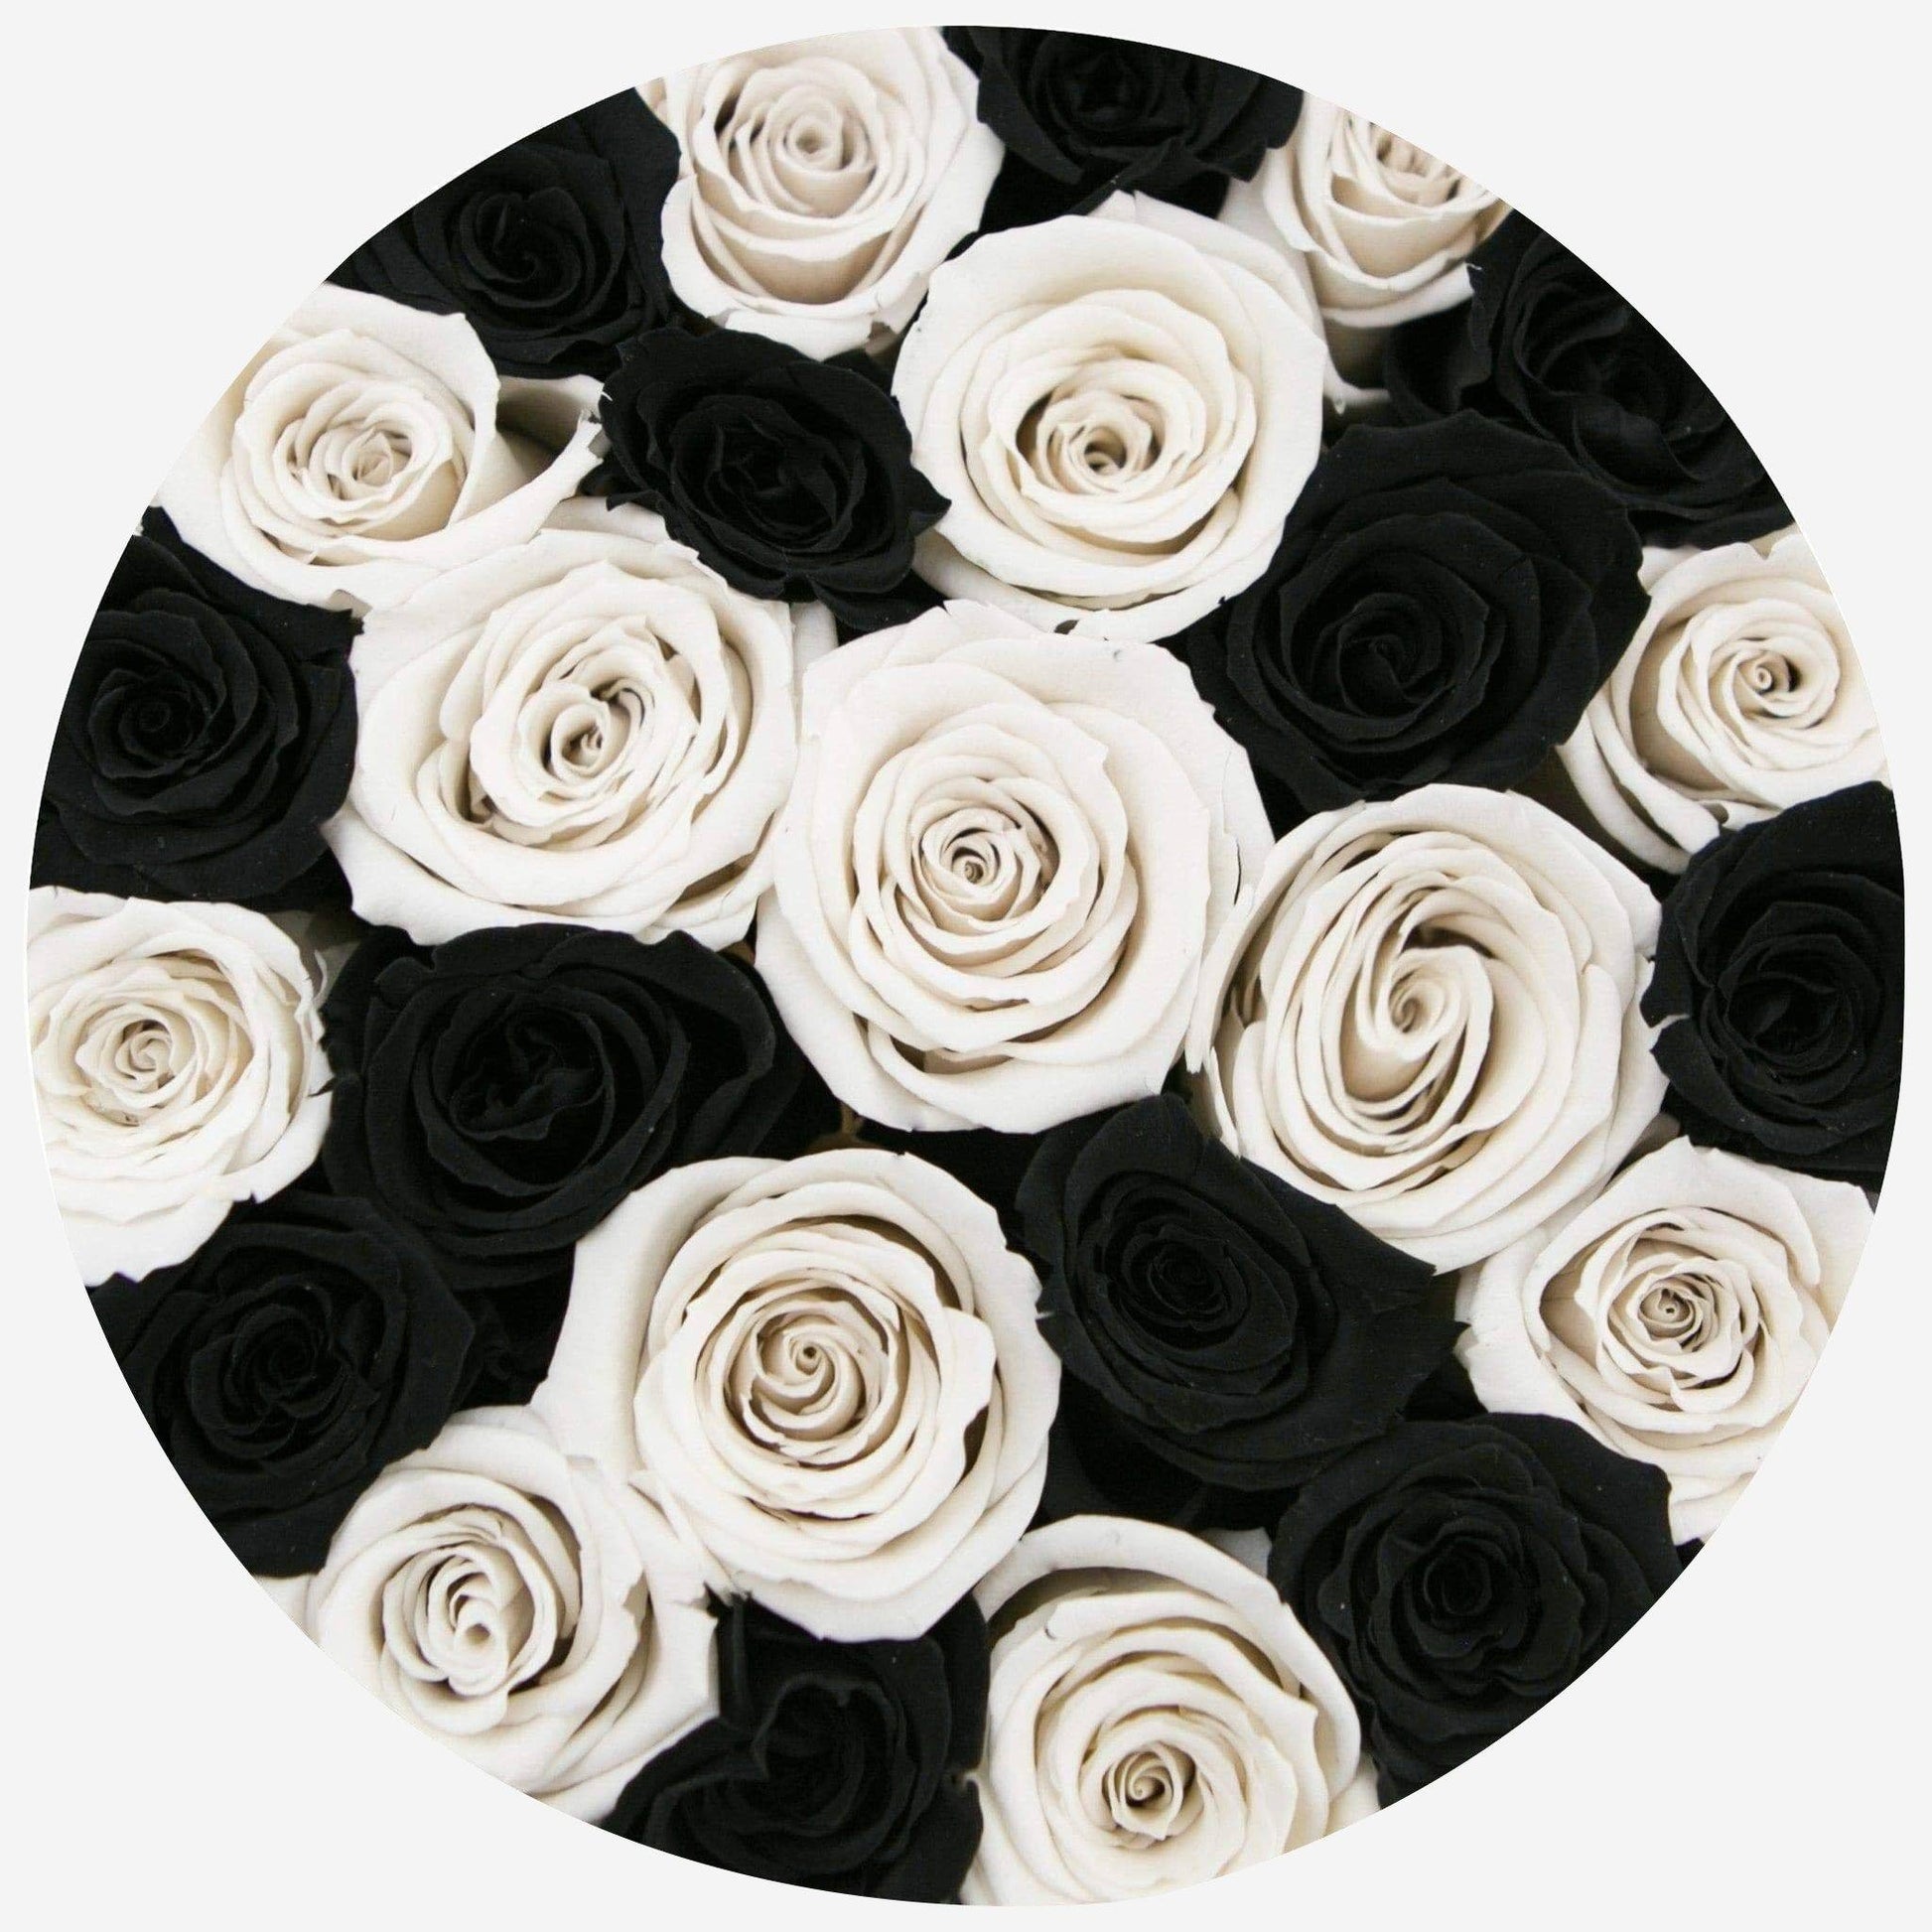 Classic Black Box | Black & White Roses - The Million Roses